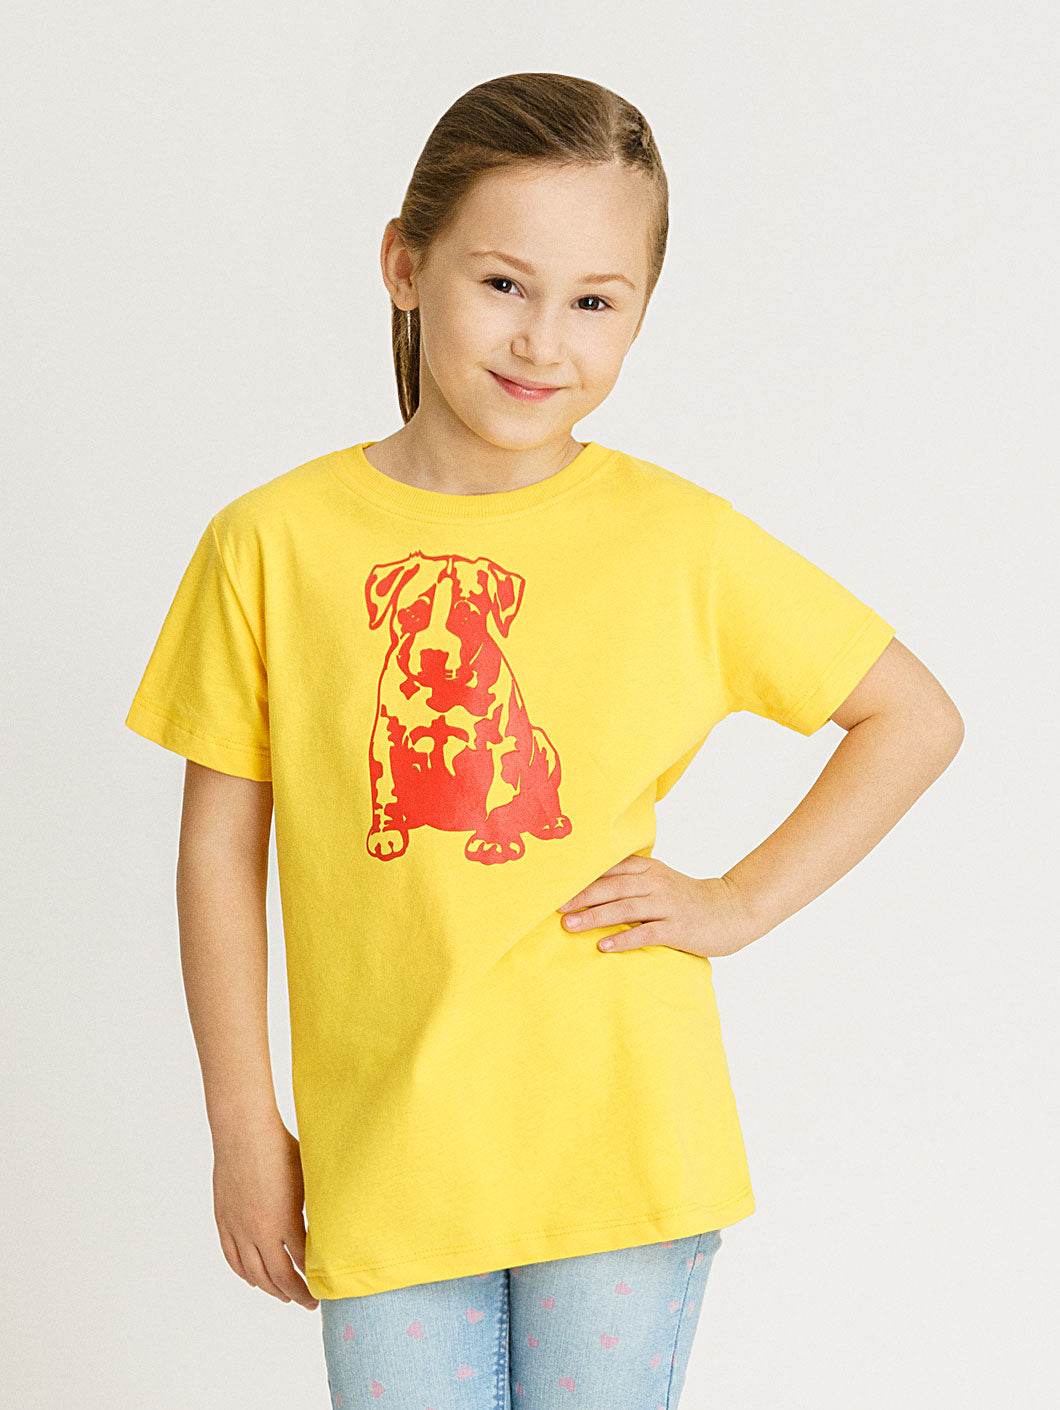 Babystaff Kids Logo T-Shirt gelb - 8